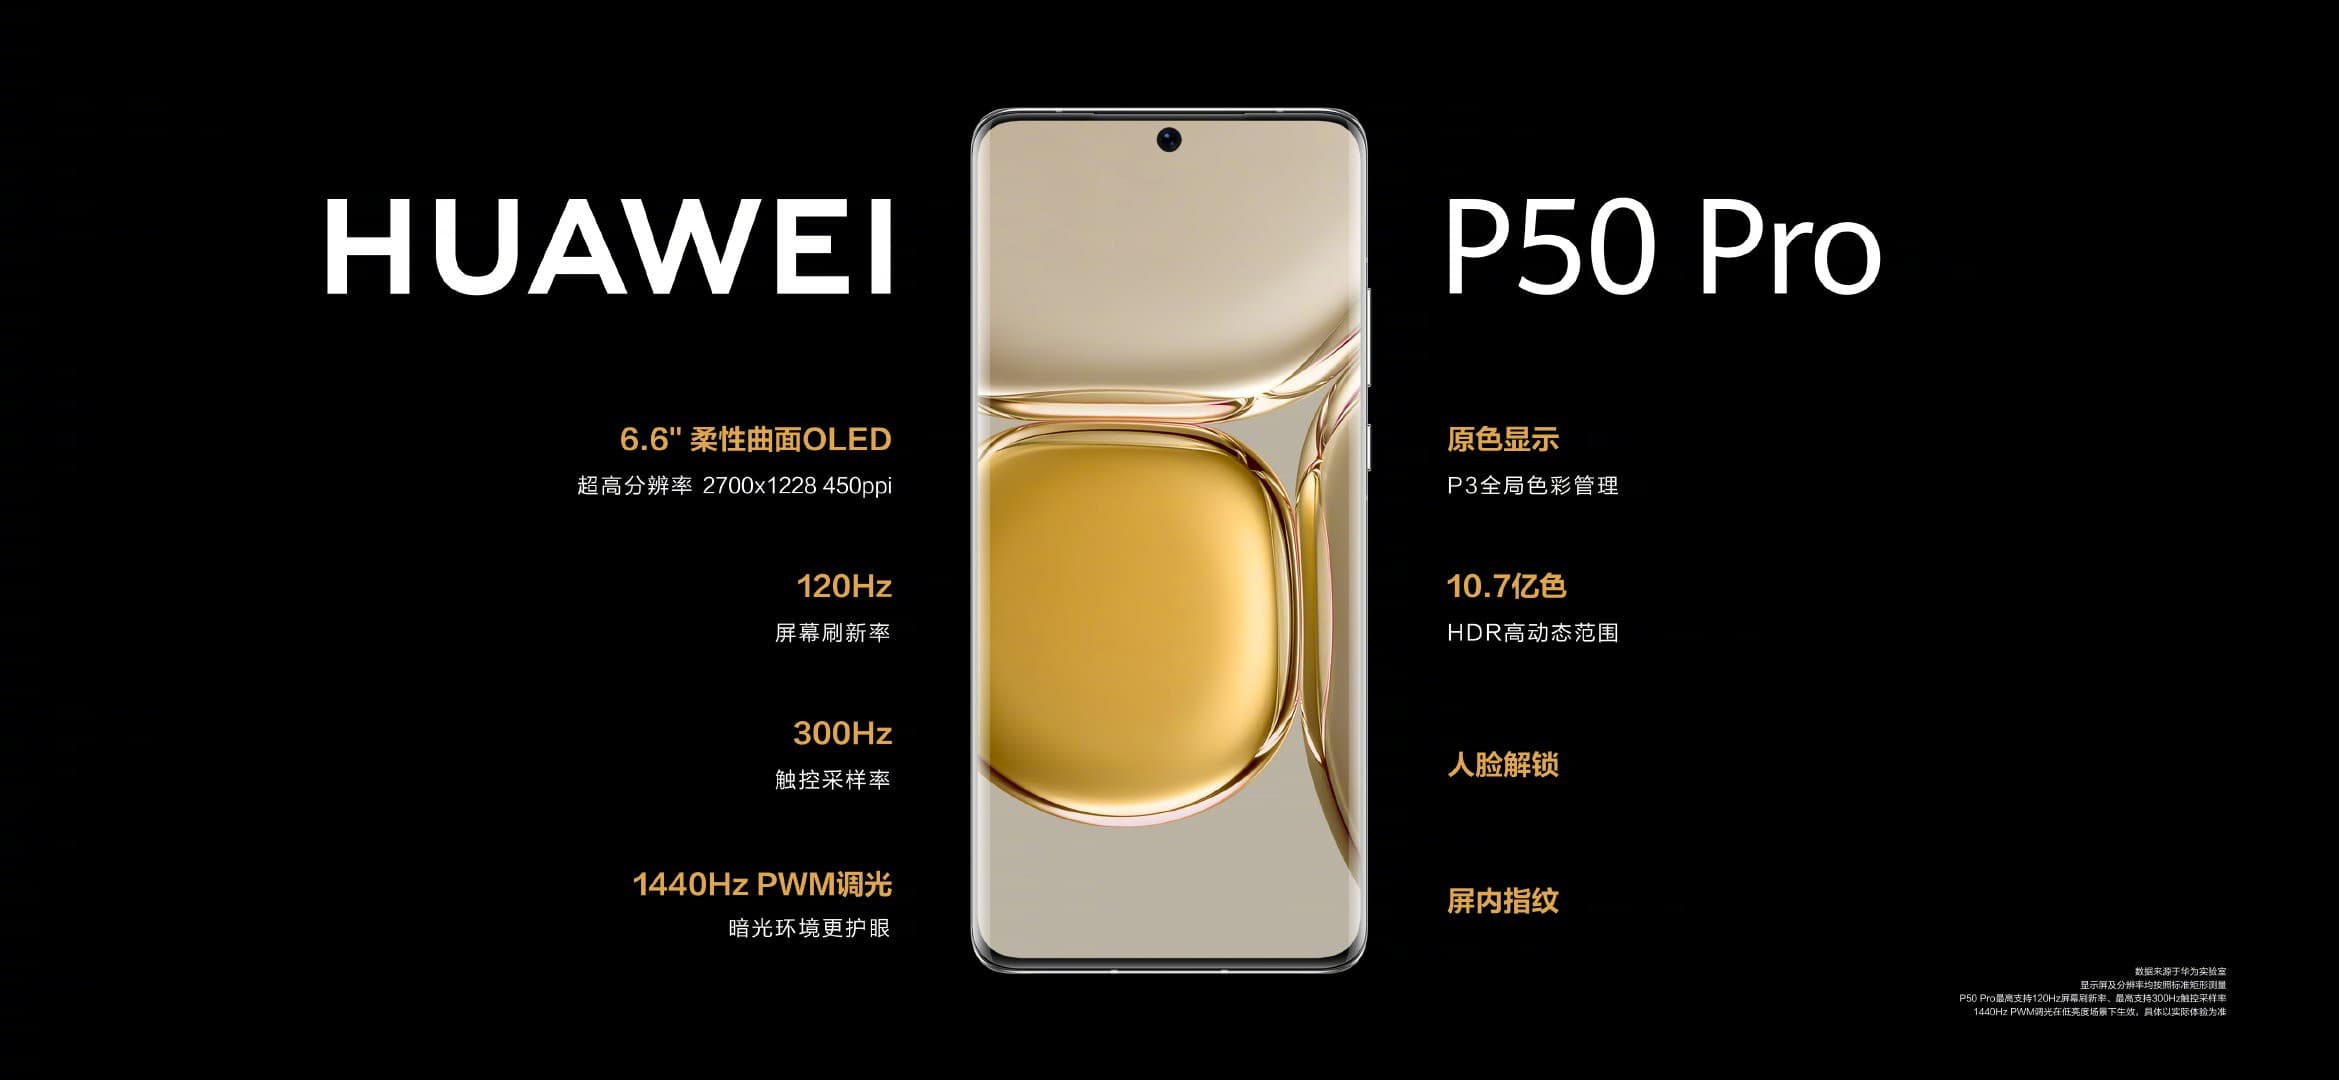 Nem szólt nagyot a Huawei P50 és P50 Pro